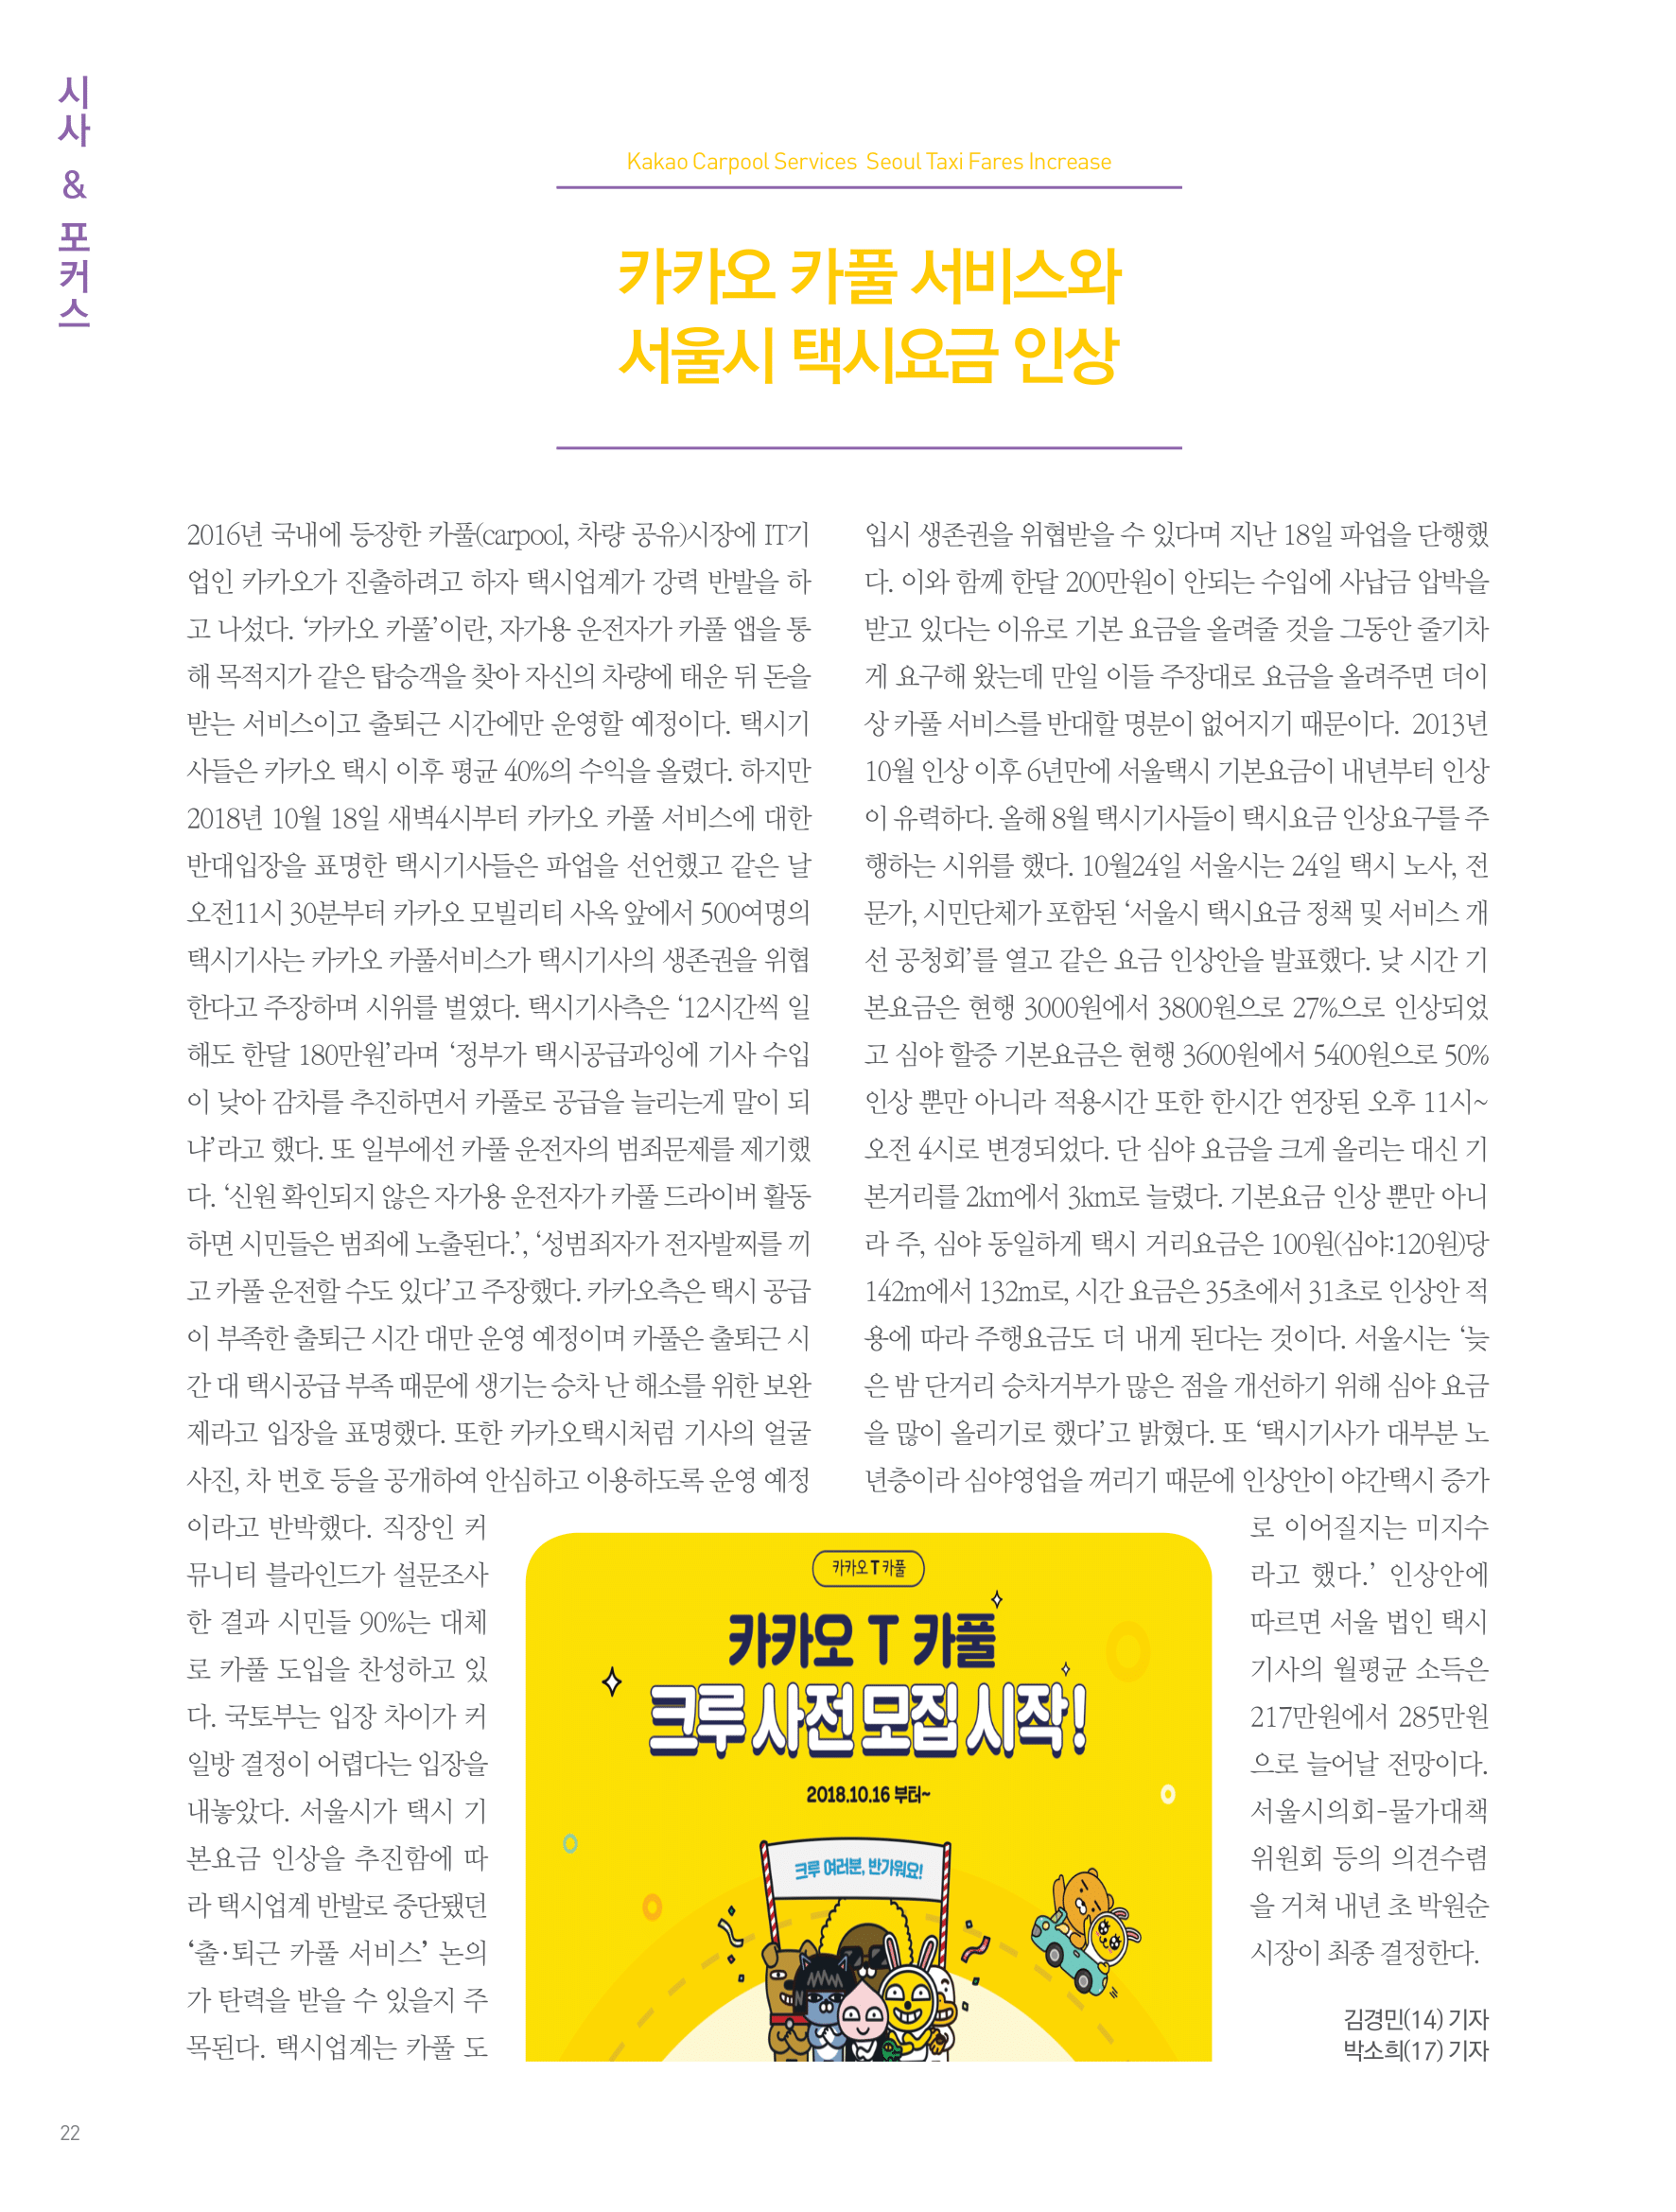 뜻새김 신문 72호 22